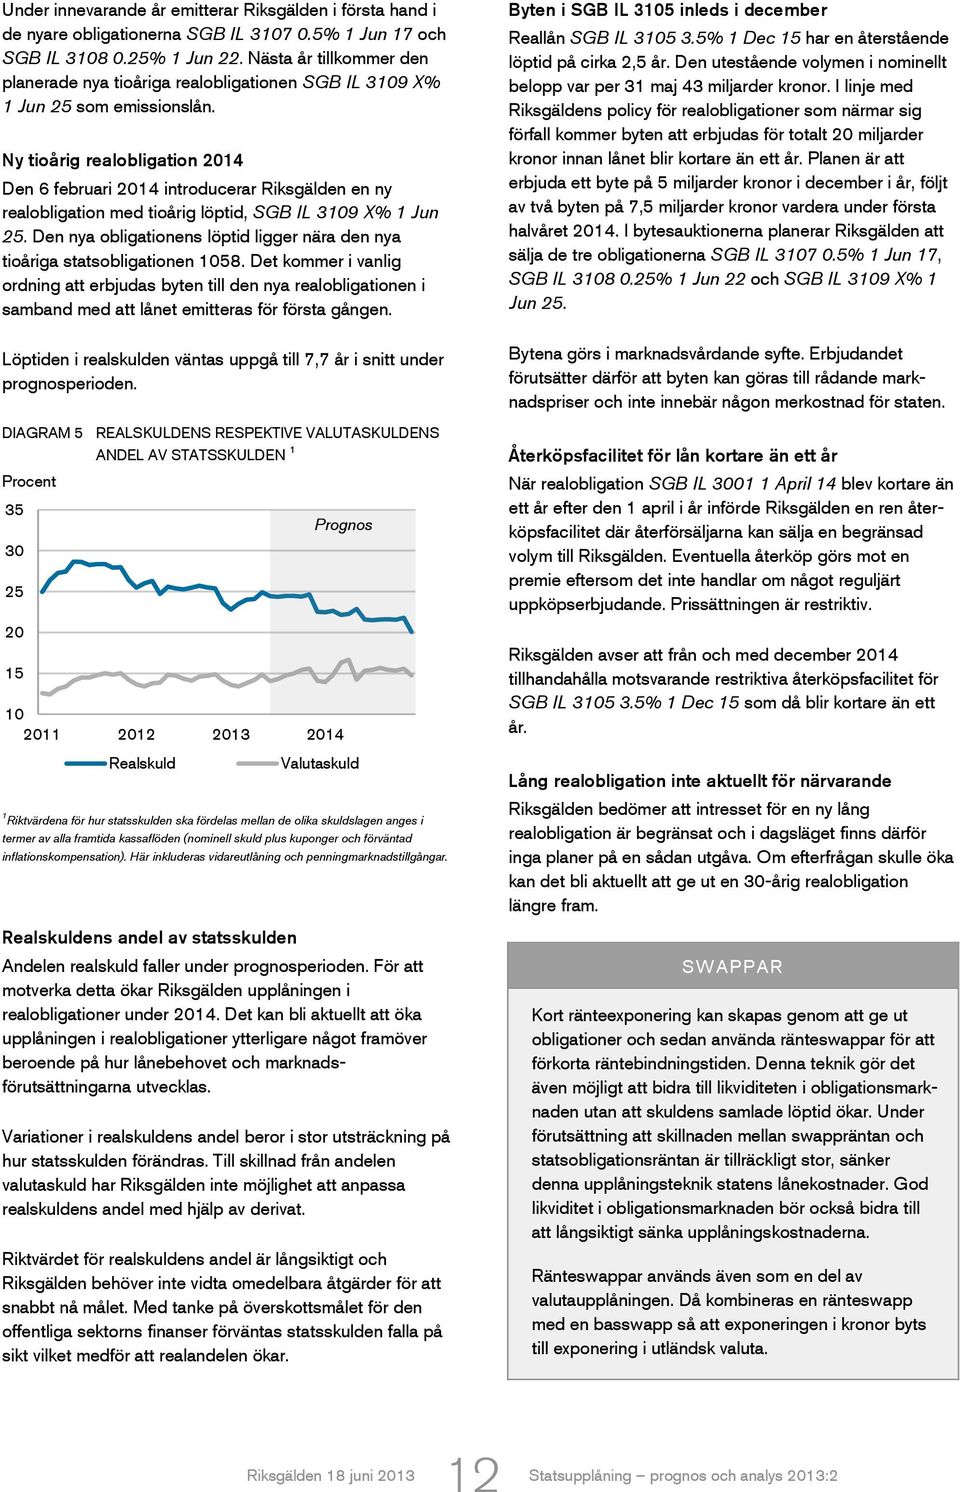 Ny tioårig realobligation 2014 Den 6 februari 2014 introducerar Riksgälden en ny realobligation med tioårig löptid, SGB IL 3109 X% 1 Jun 25.